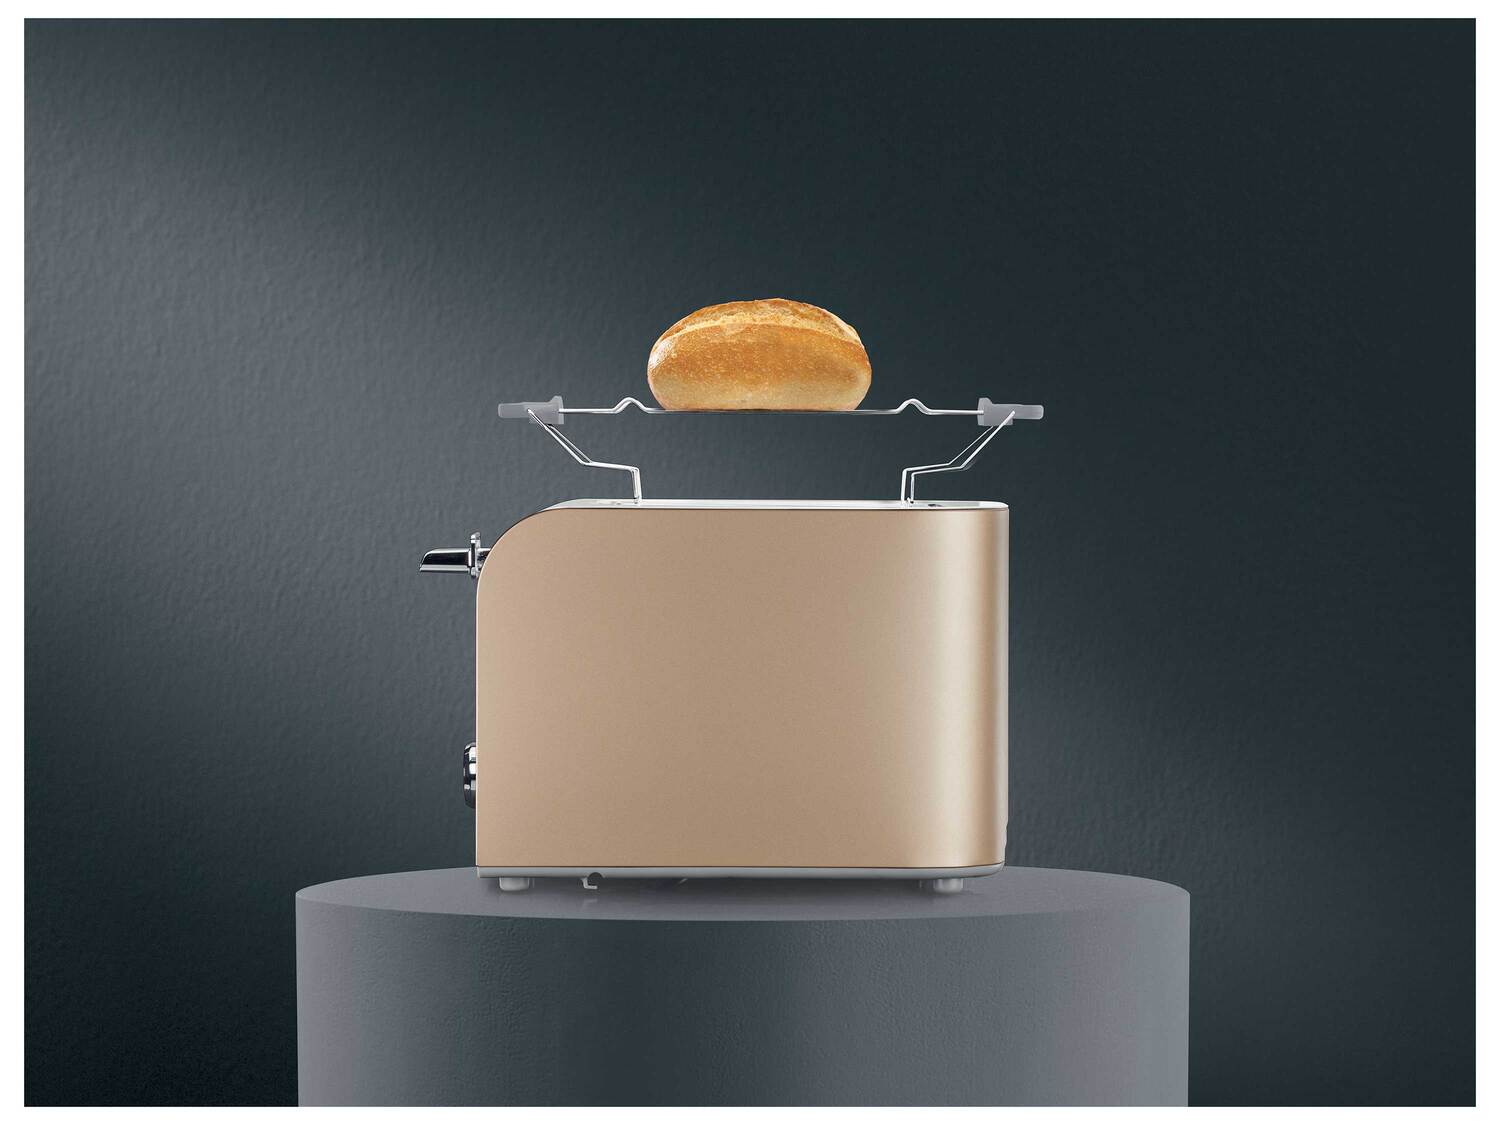 Grille-pain , le prix 21.99 € 
- 850 W
- Fonctions décongélation, réchauffage ...